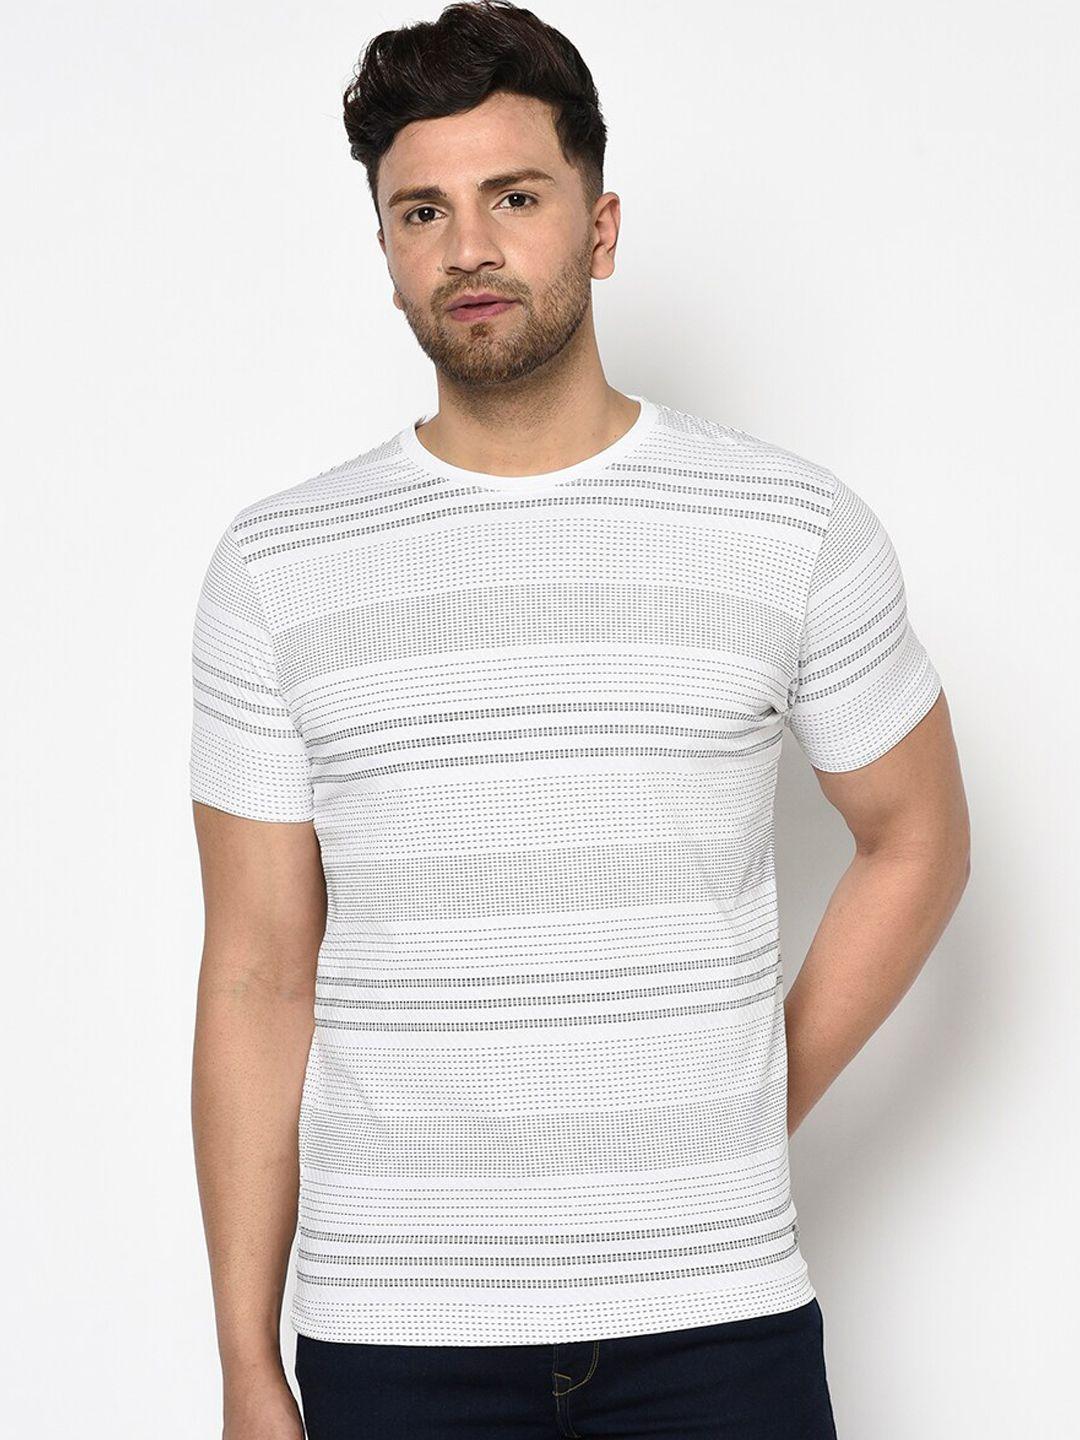 duke-men-white-striped-round-neck-t-shirt